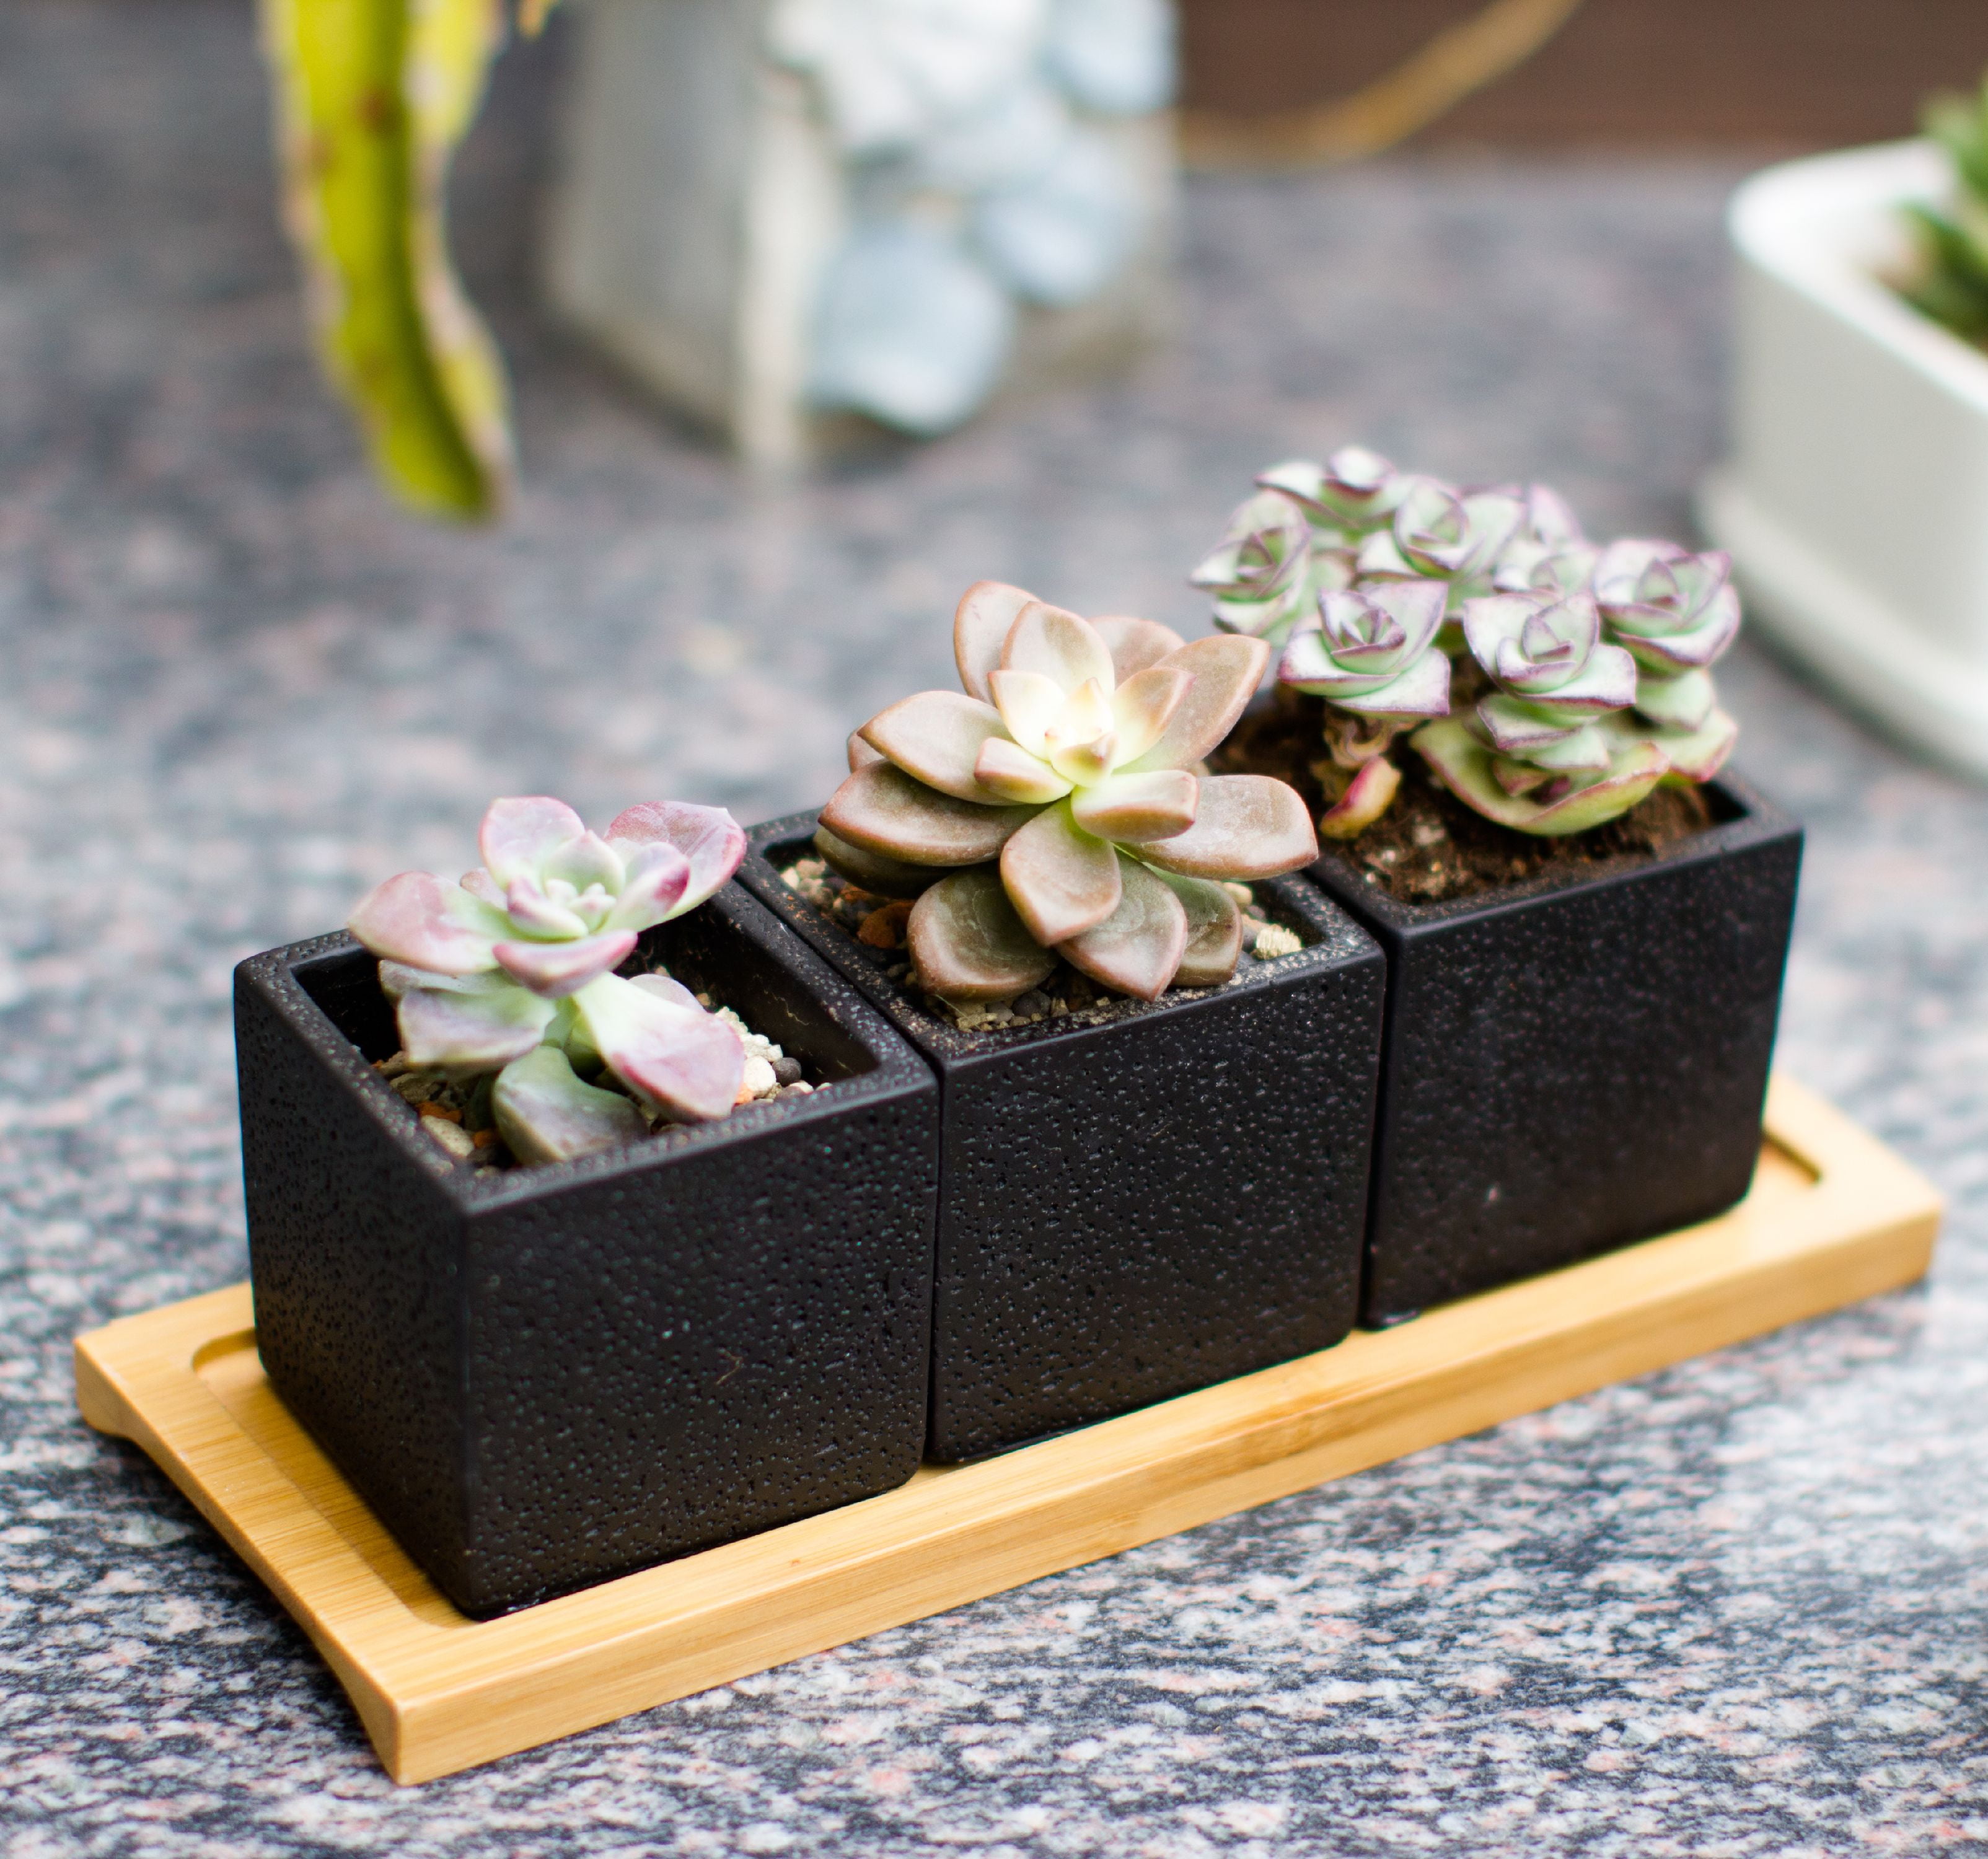 Square Succulent Planter Pots 2.5 inch Decorative Cement Pottery Cactus  Flower Pot with Tray Set of 3pcs Black 